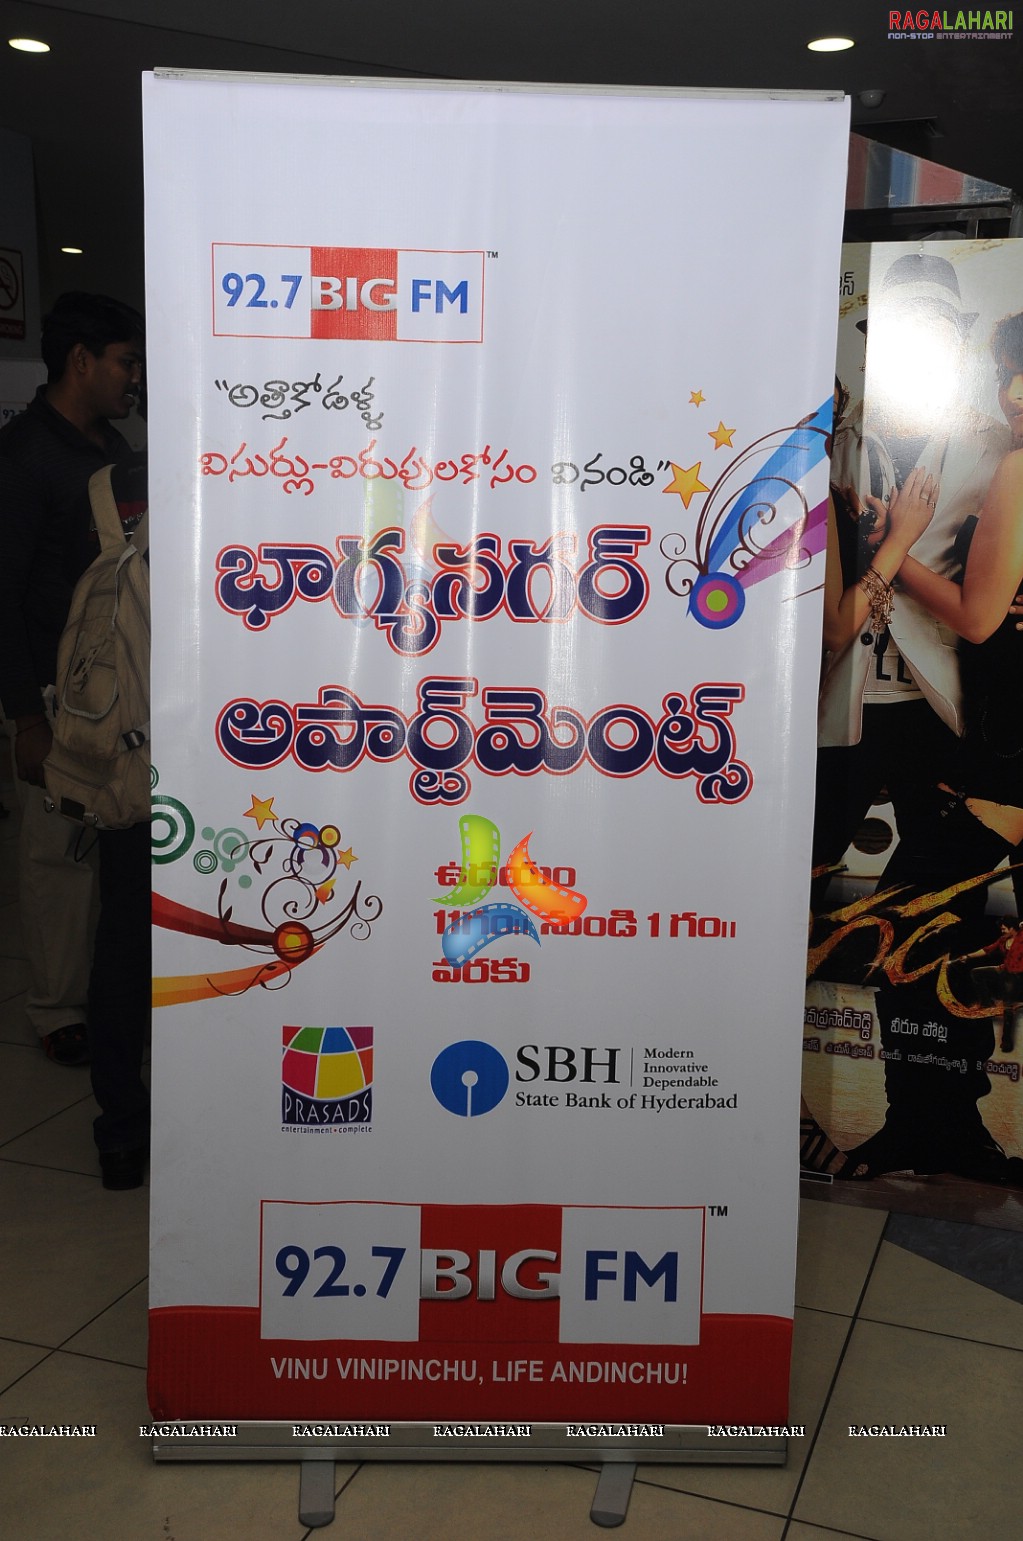 Big FM Rangoli Competition 2011